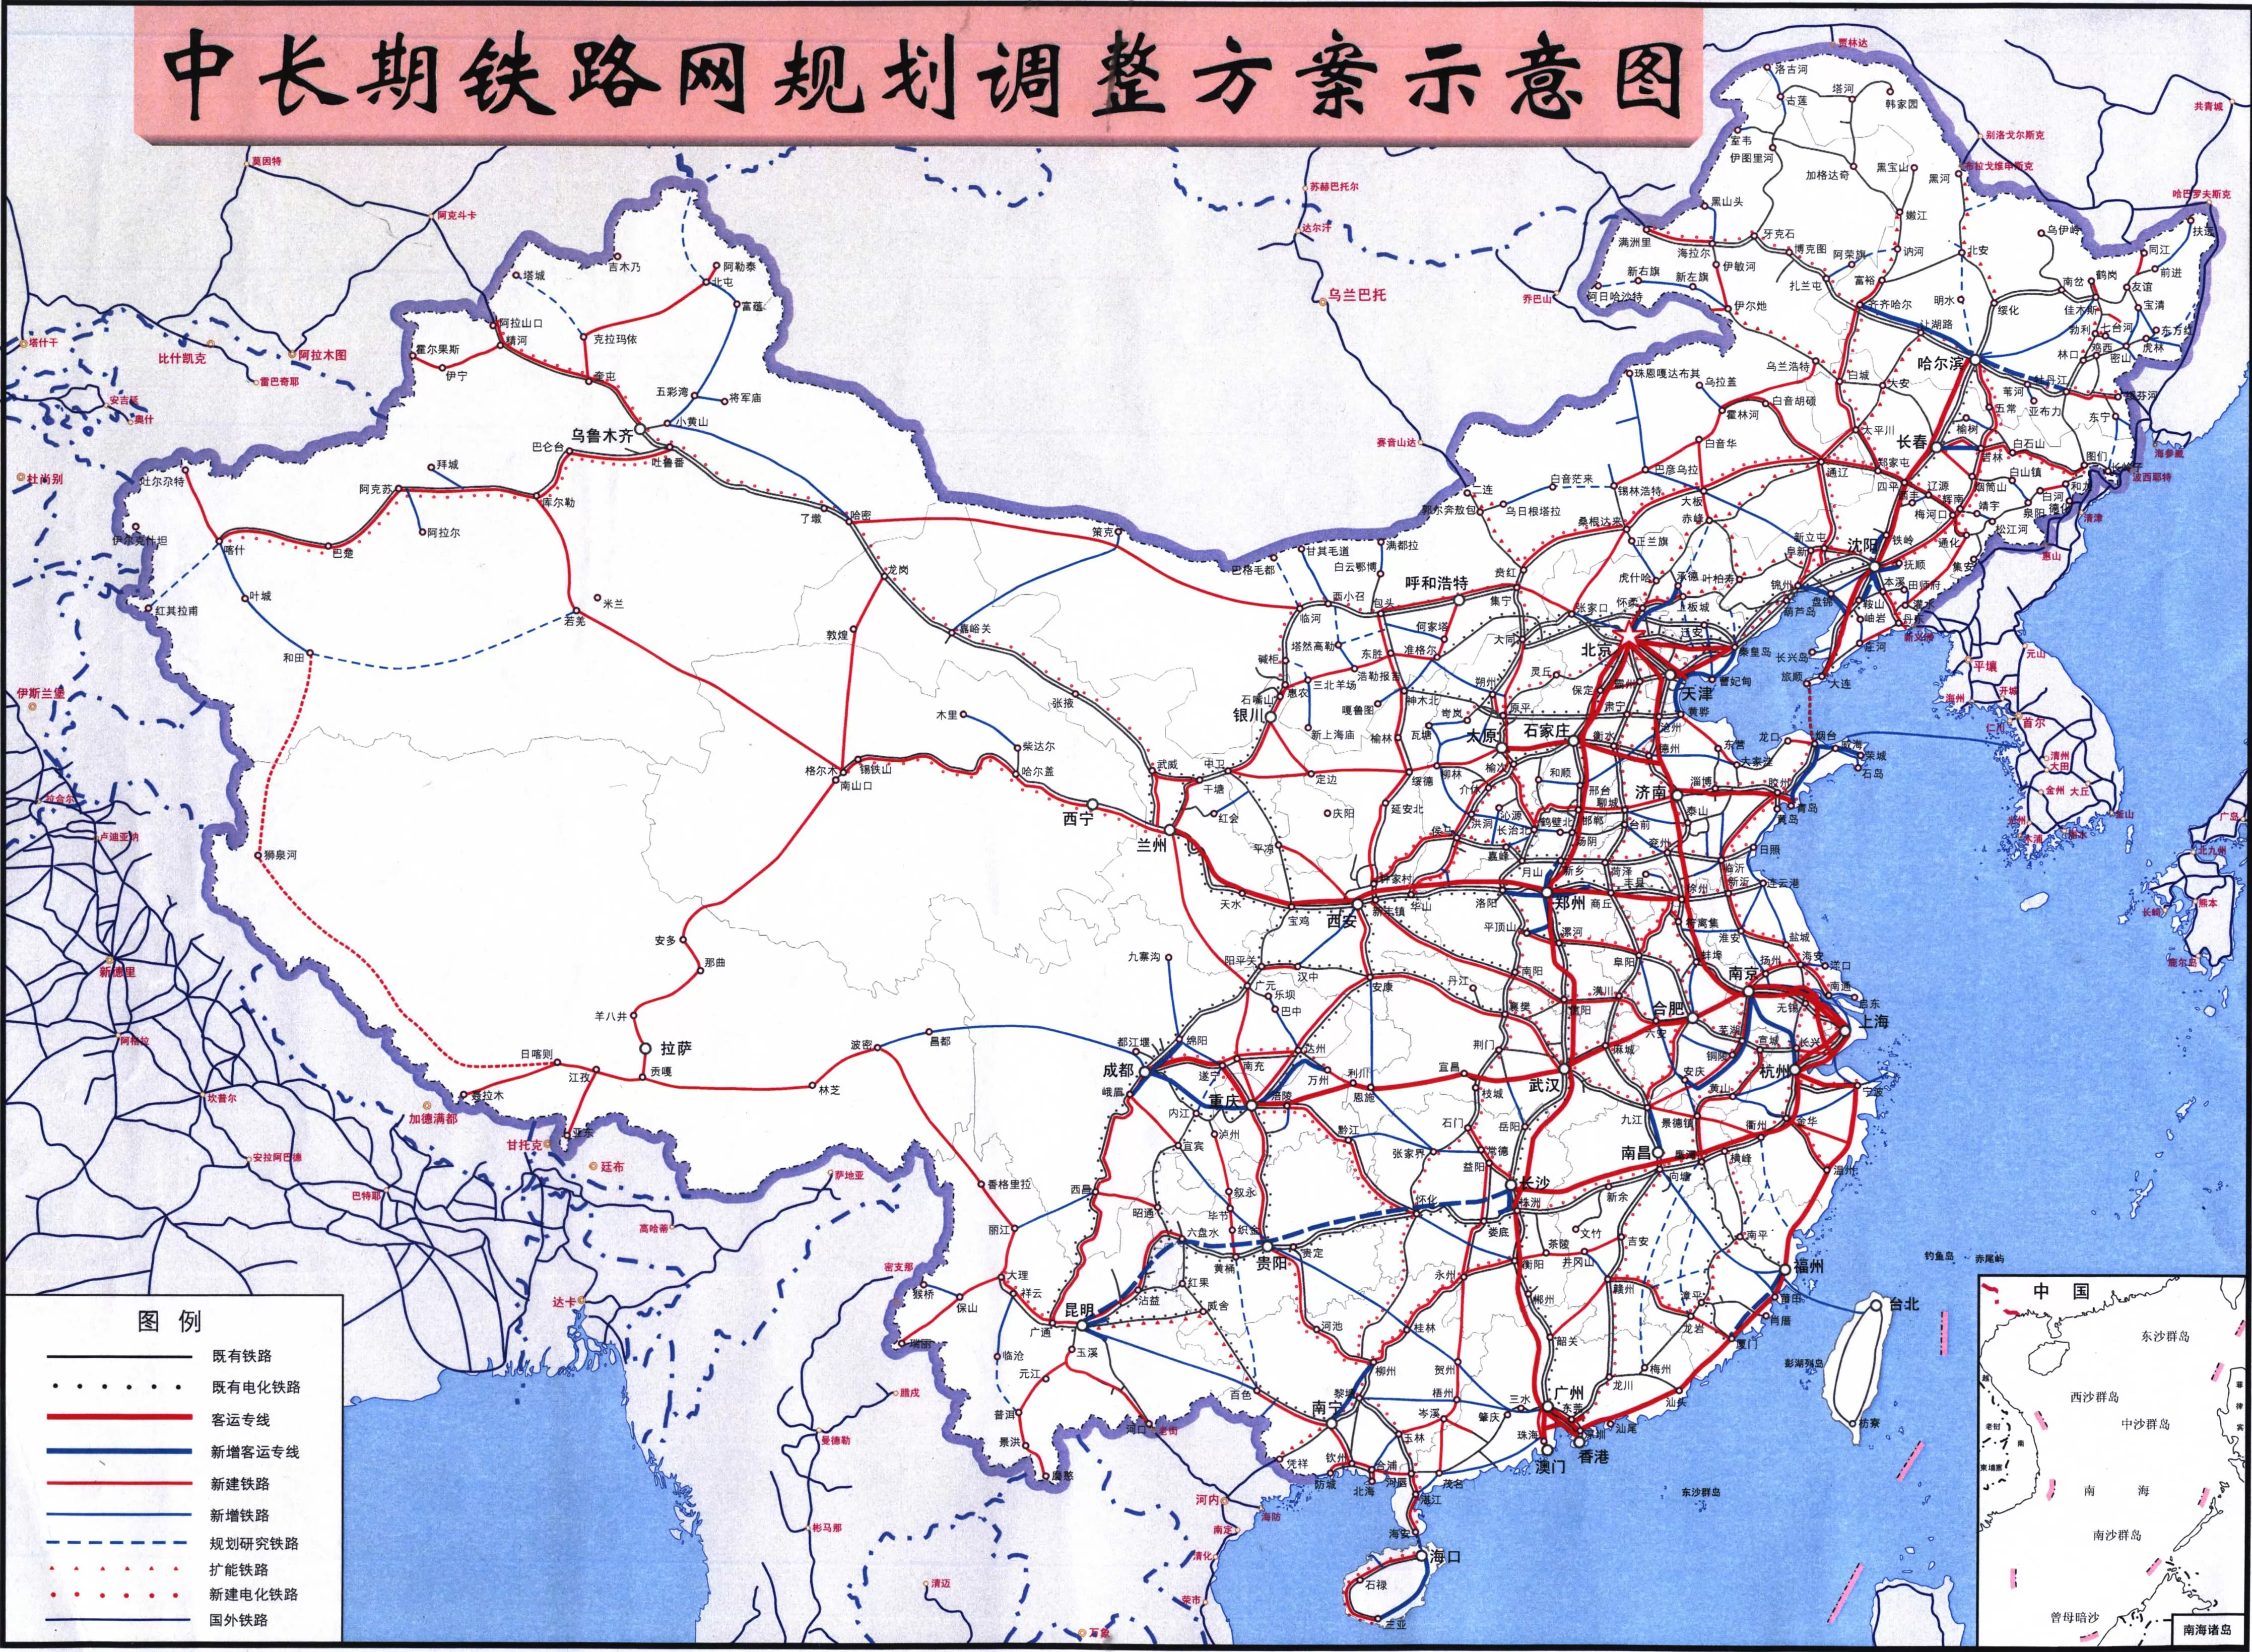 方舆 - 交通地理 - 中国将和坦桑尼亚合作建设中央标轨铁路 - Powered by phpwind